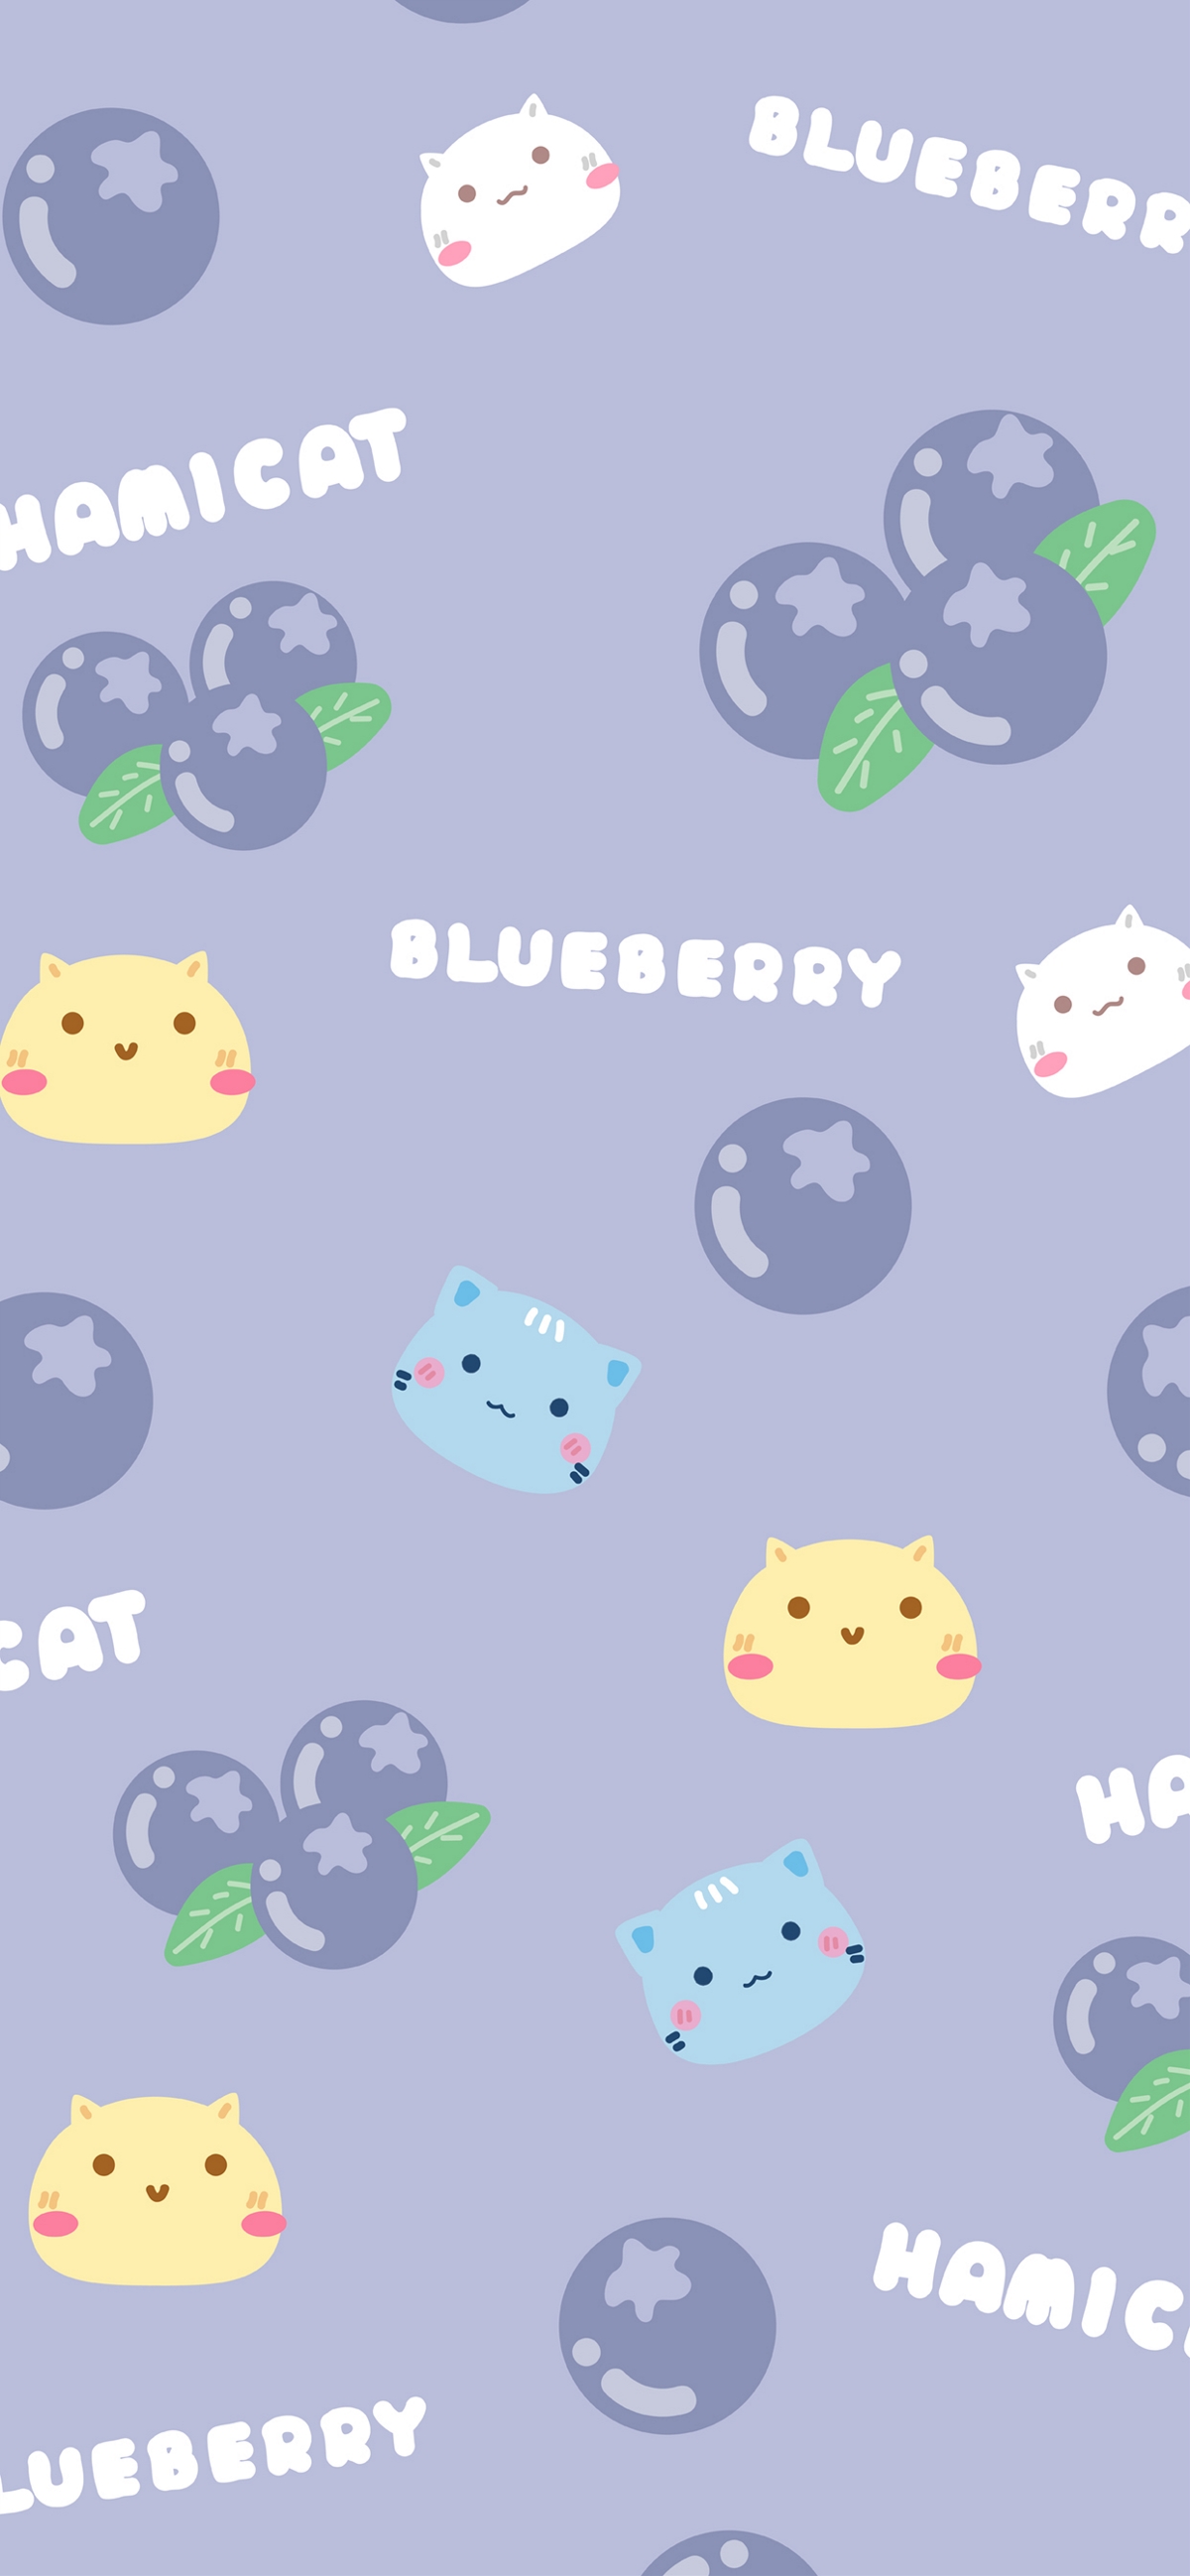 哈咪猫爱蓝莓